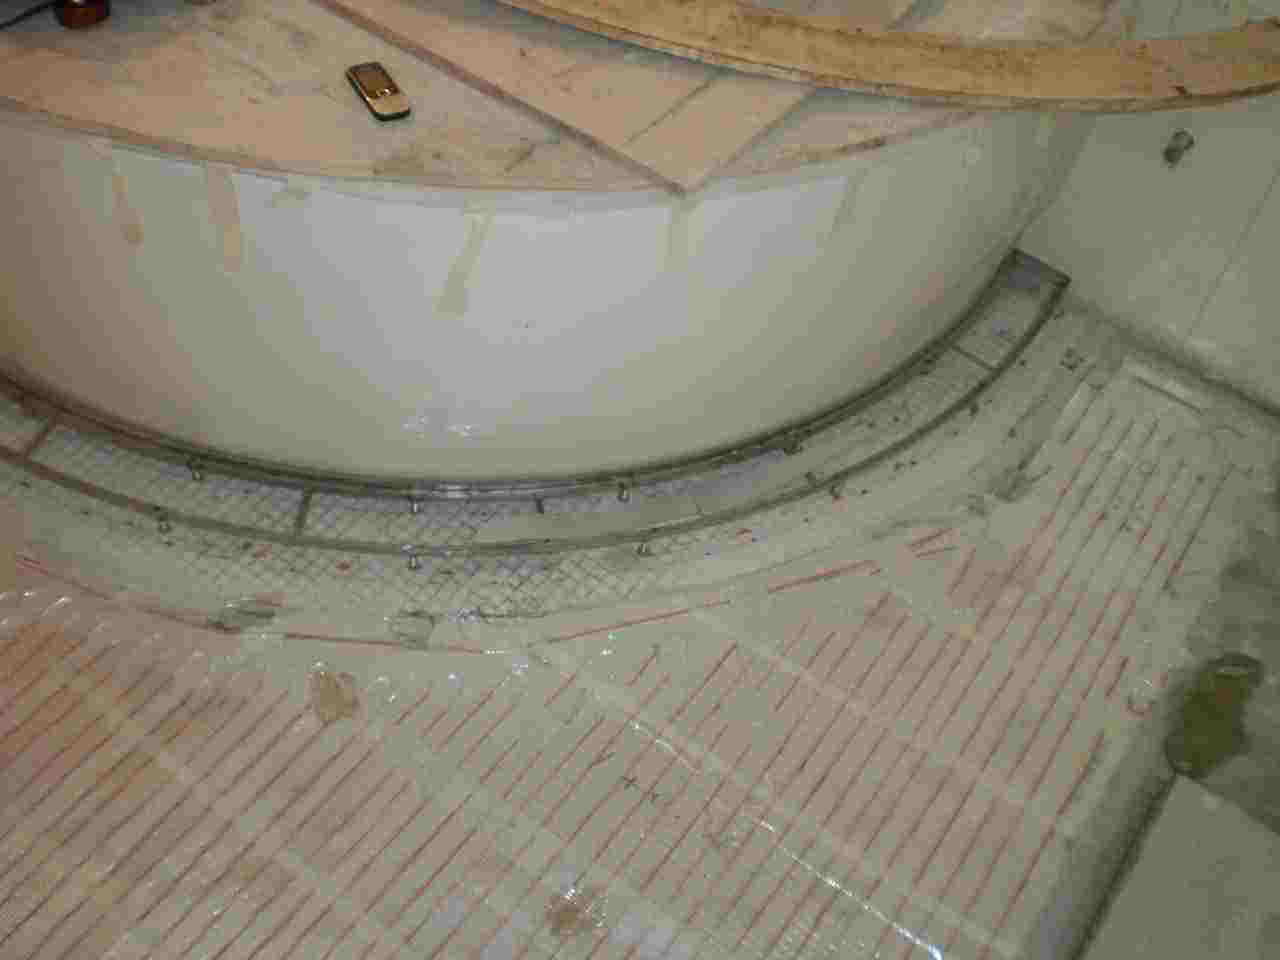 heated floor, heating sytsem, under floor heating, heating mat, floor warming, under tile heating elementsAaxtΡAaxouAaxu{AaxoutΡAqx֡AquAq֡AoaOAxa˸mAaxķxt